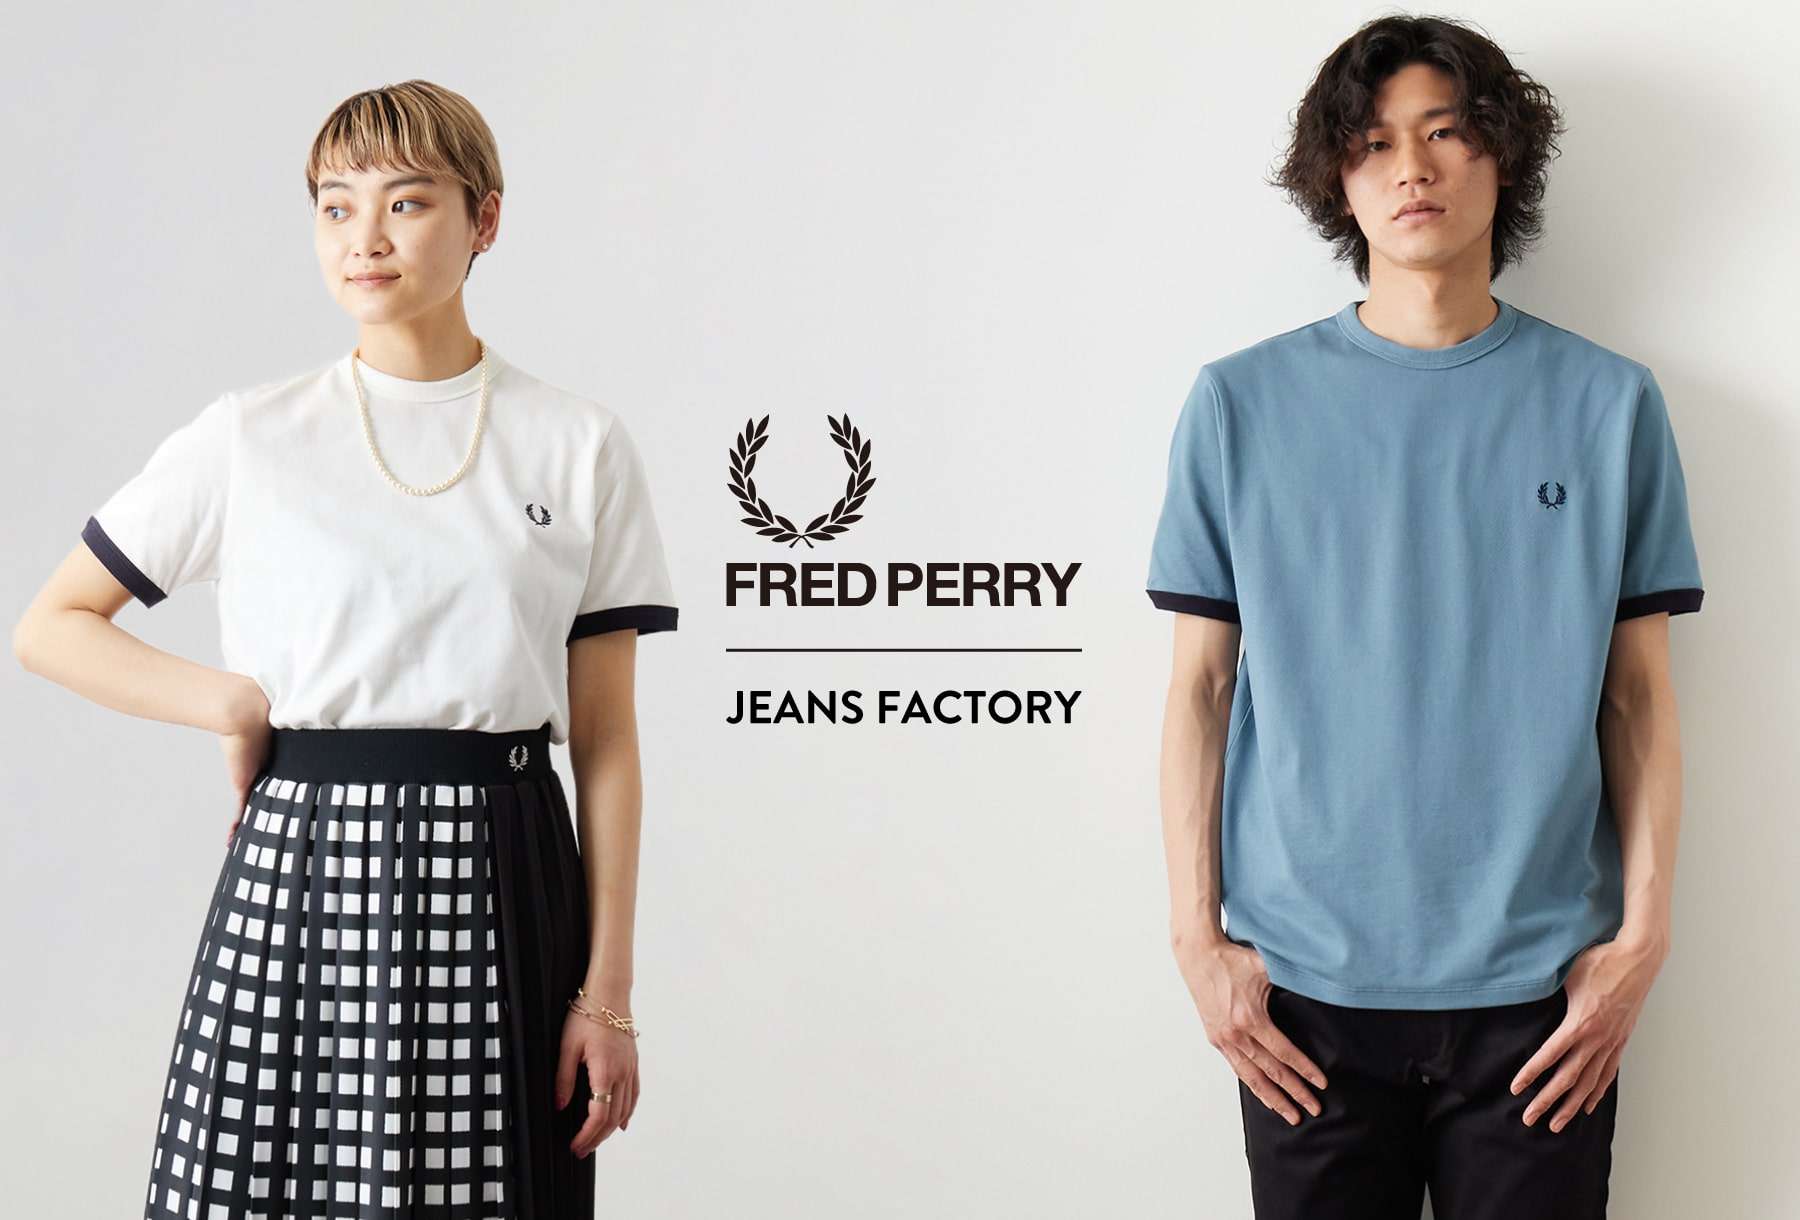 英国カルチャーの象徴 FRED PERRY(フレッドペリー)との別注Tシャツがリリース